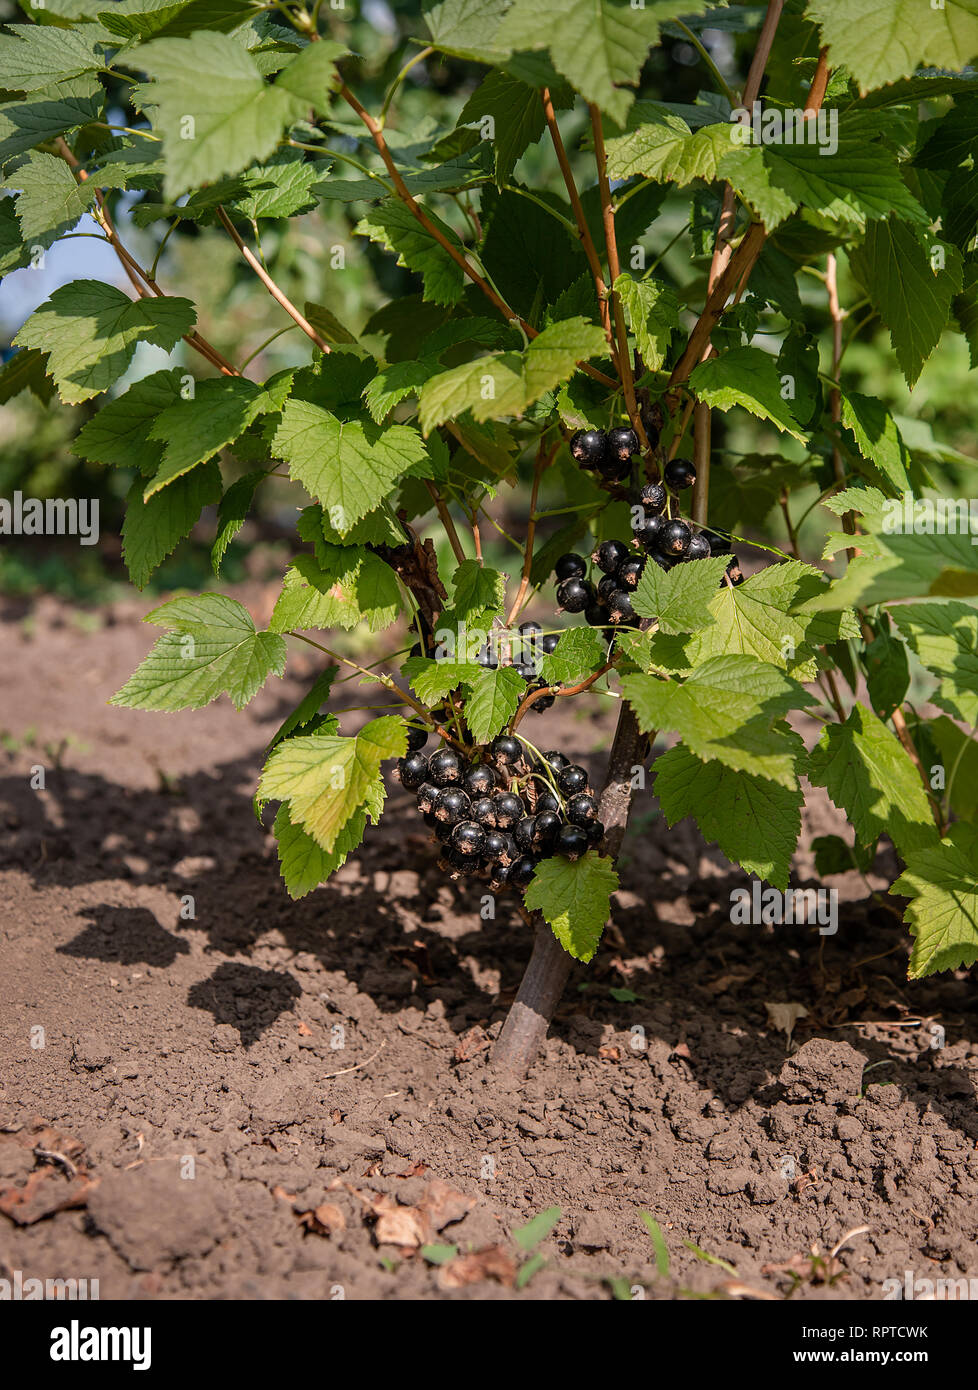 Black et baies de cassis frais juteux de plus en plus sur la plante. Fruits bio à la ferme. Banque D'Images